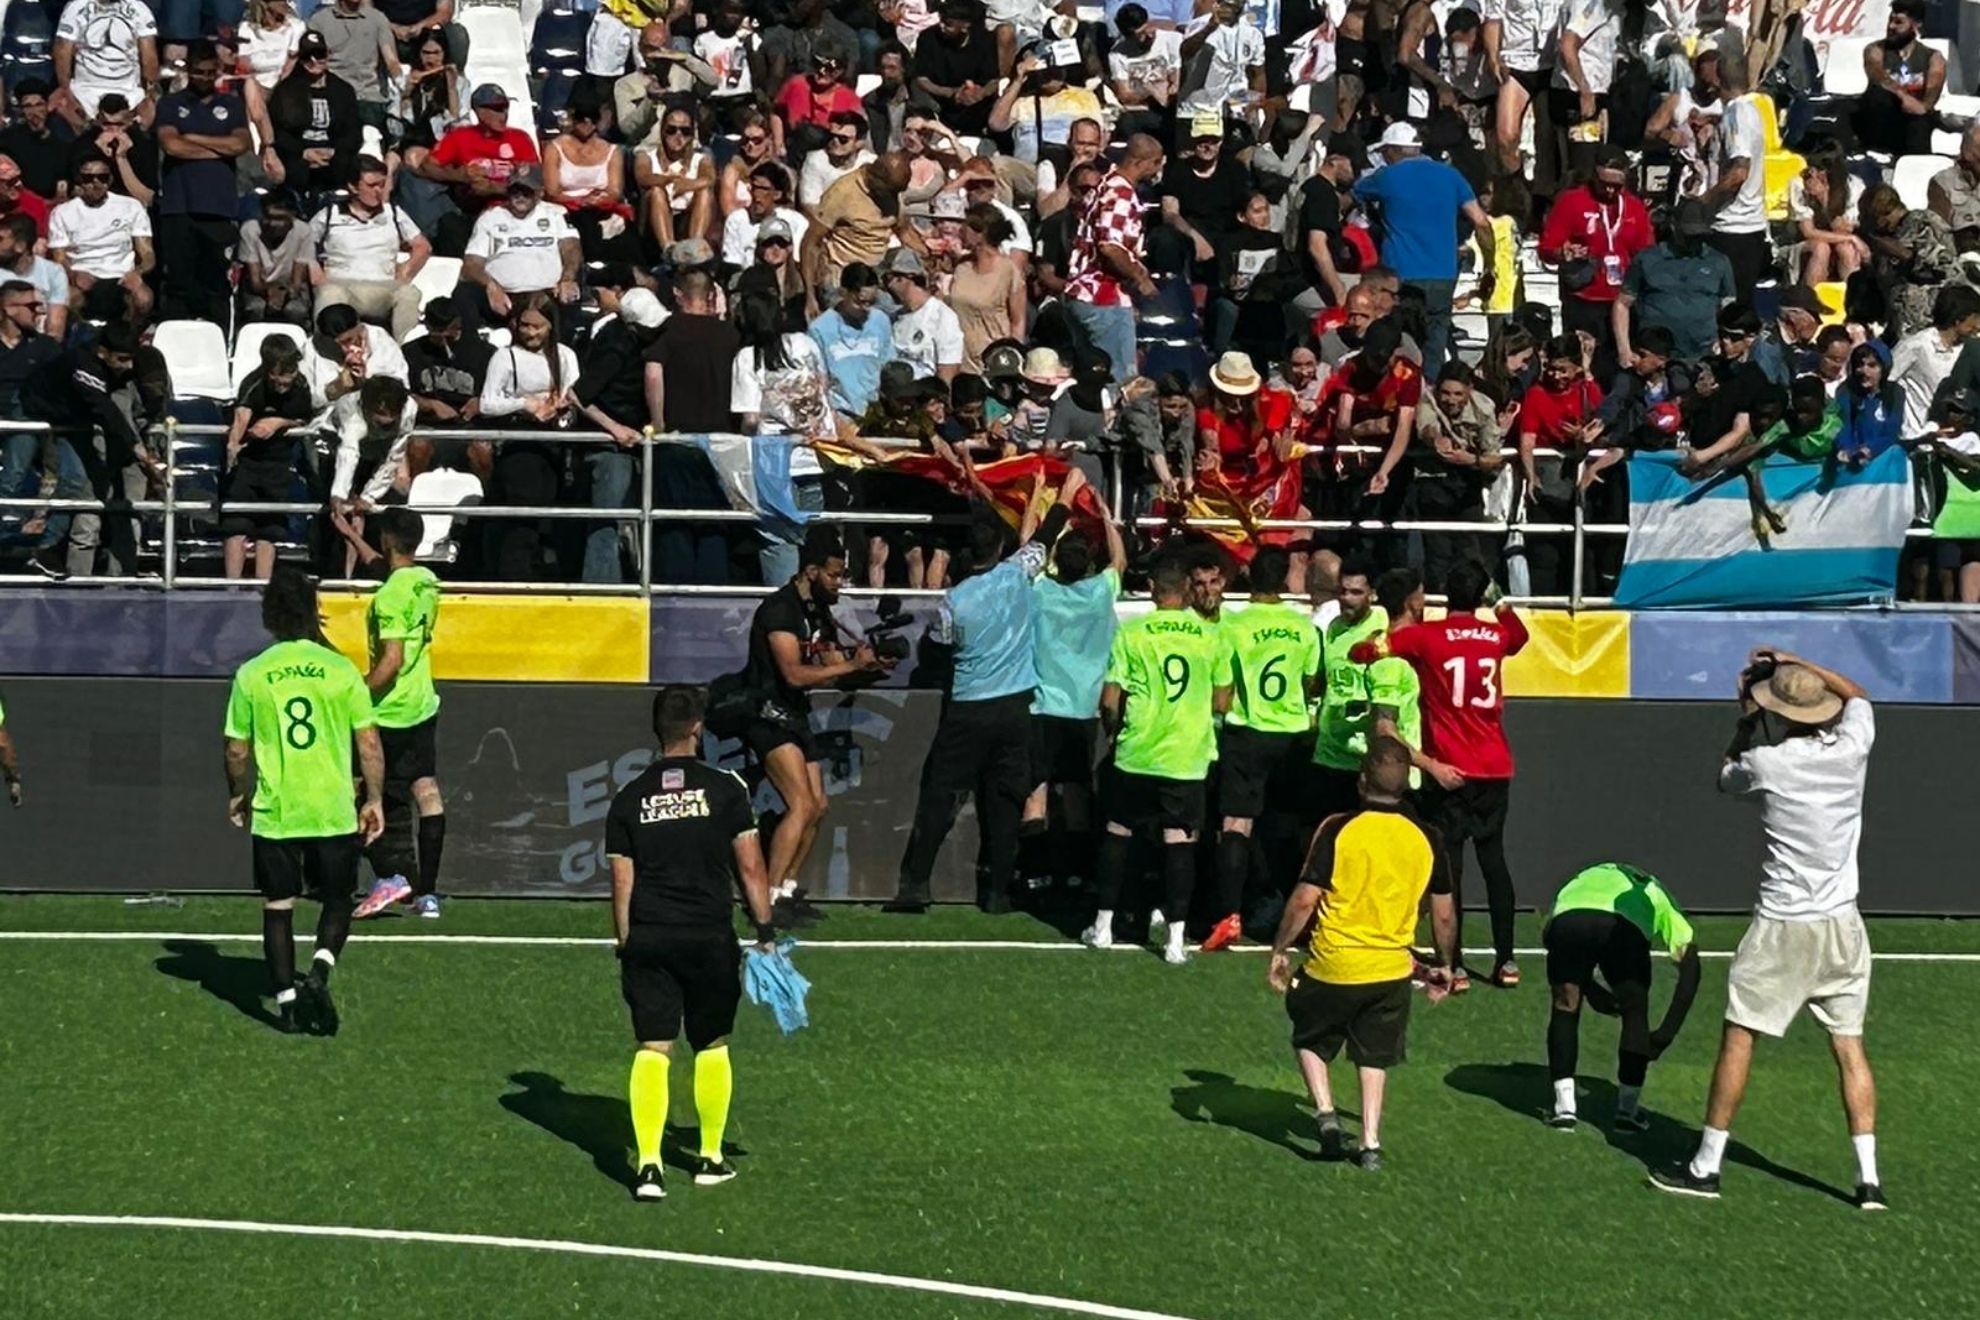 Los jugadores de Las Olas firman autgrafos tras ganar a Uruguay.